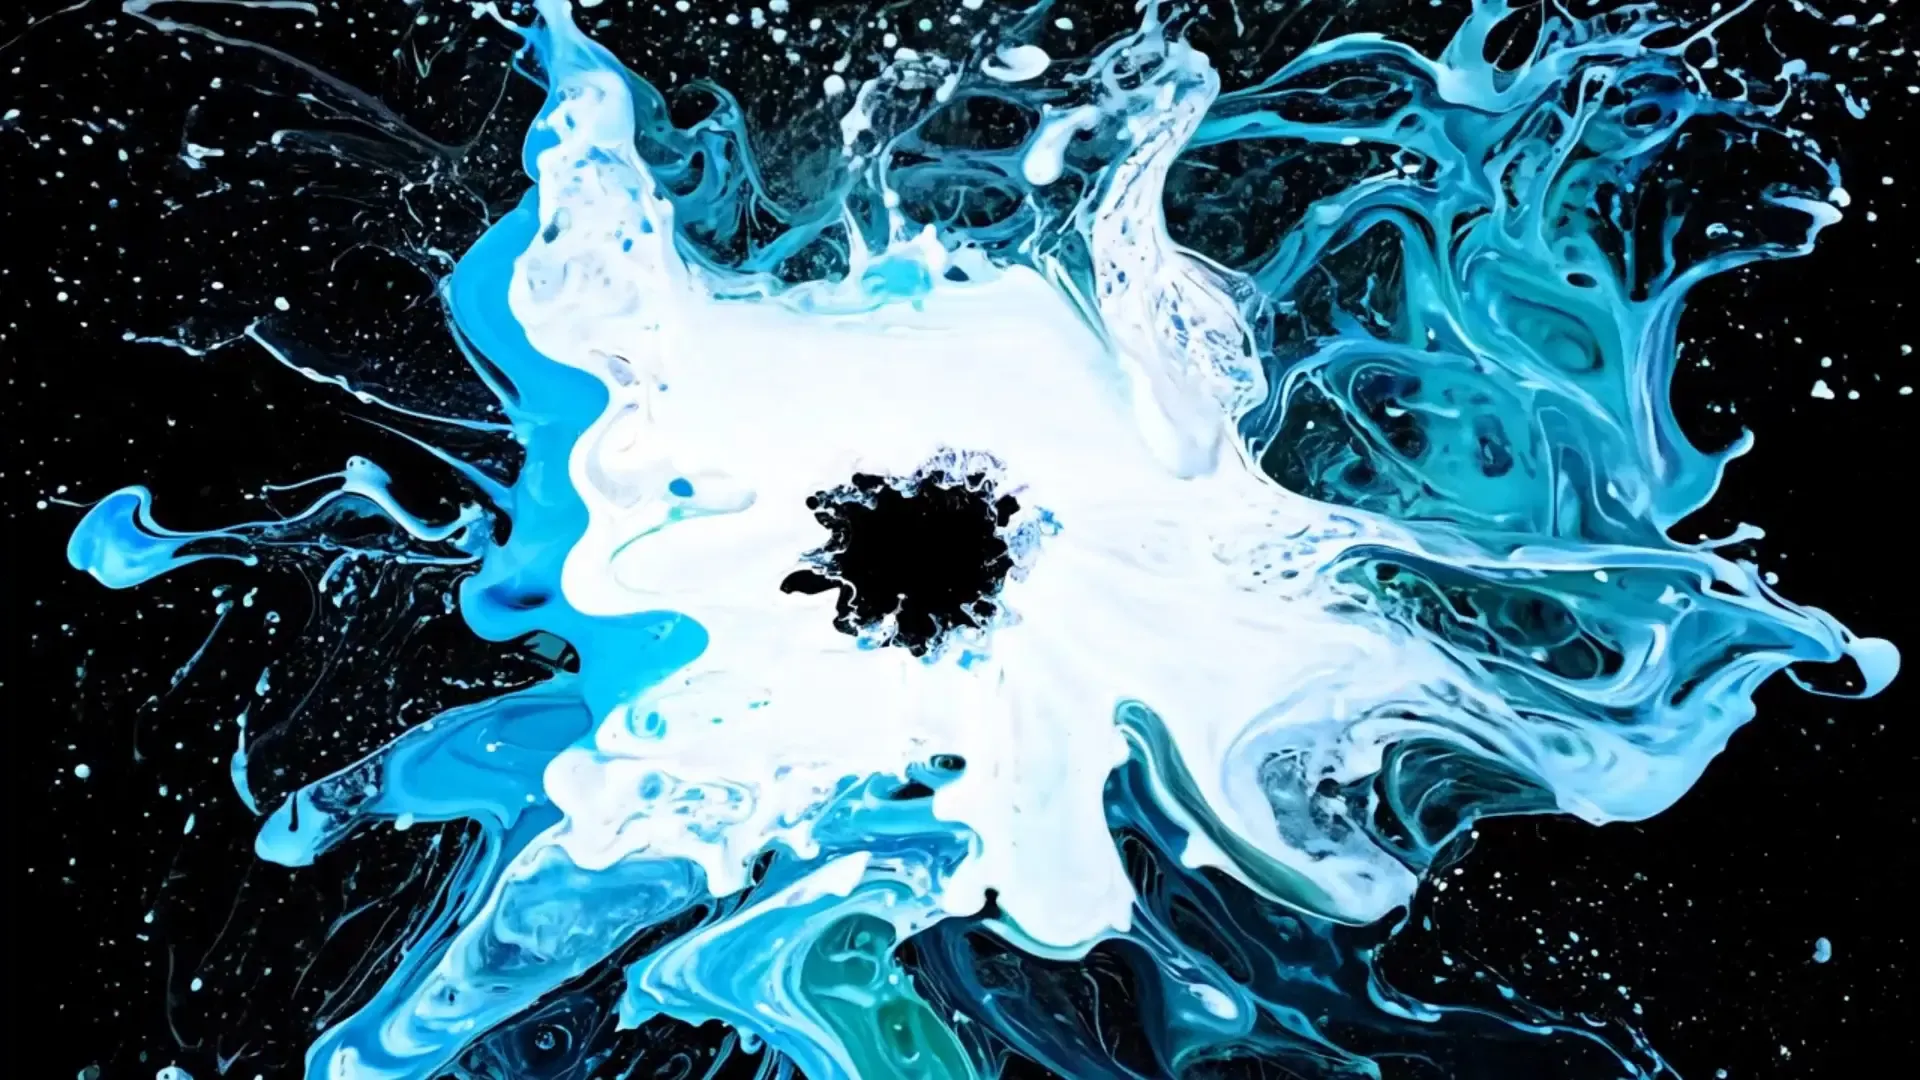 Splash Effect Logo Animation Background with Dynamic Energy